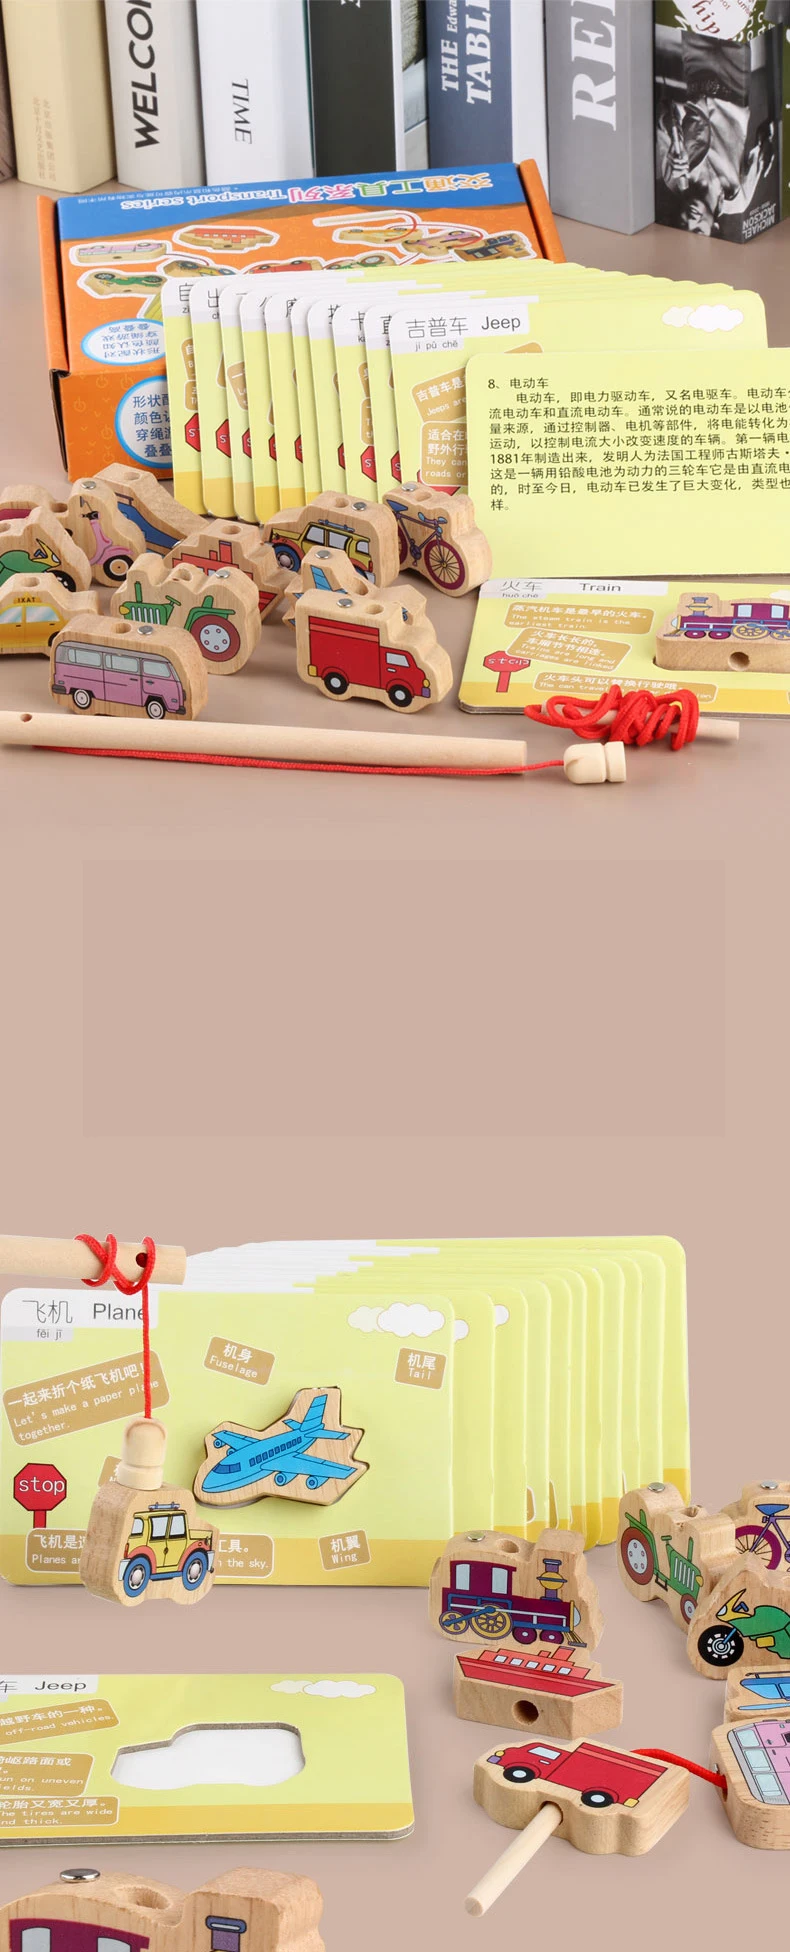 Для безопасности бисером изучение английского животных карты Образование Деревянные блоки мультфильм шнуровкой деревянной резьбы Бисер для игр Образование игрушка